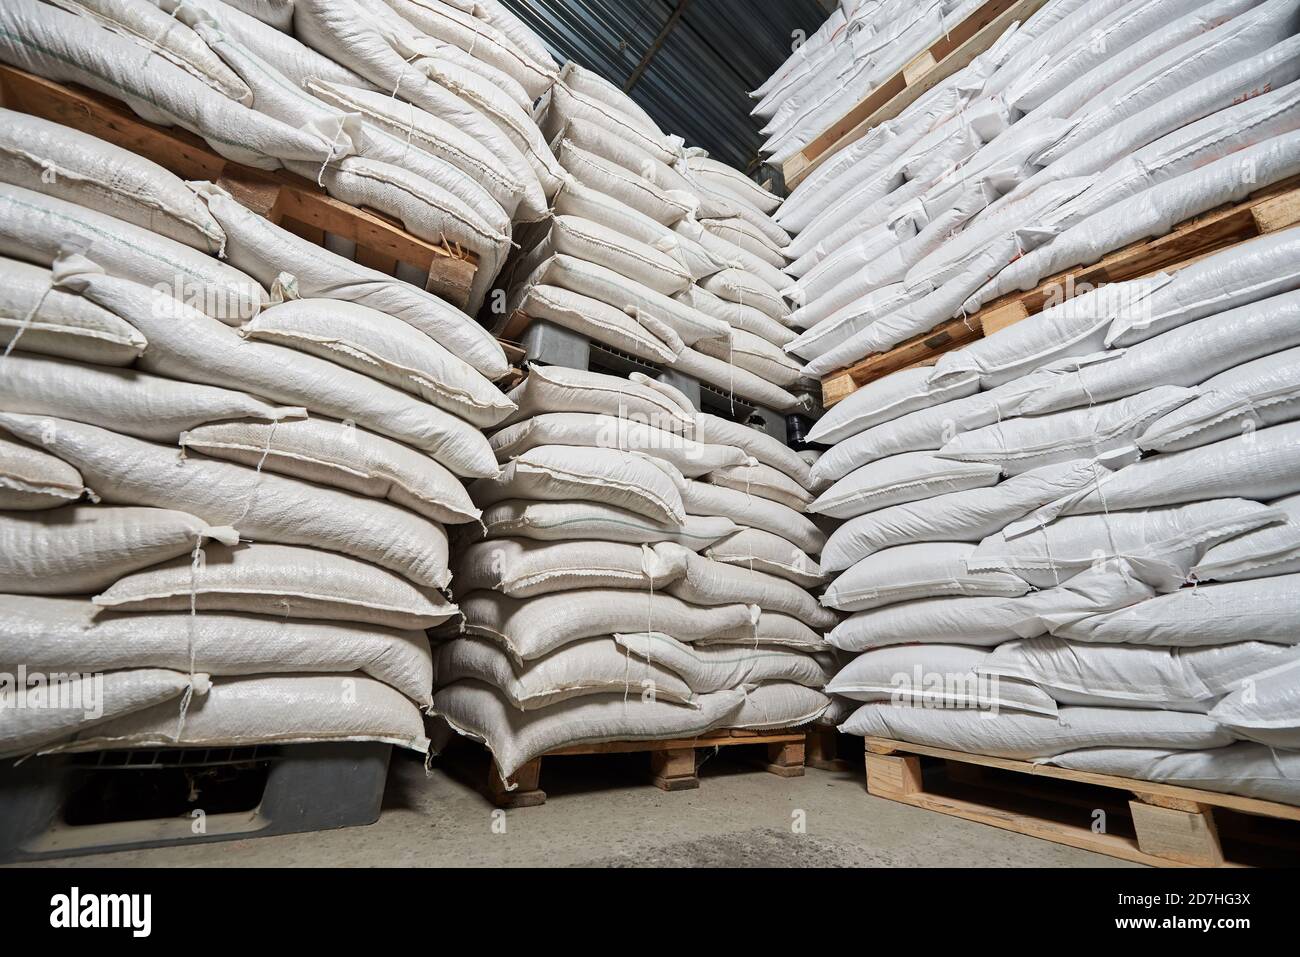 Viele weiße volle Säcke mit Getreide liegen auf Paletten hinein Ein Lager Stockfoto